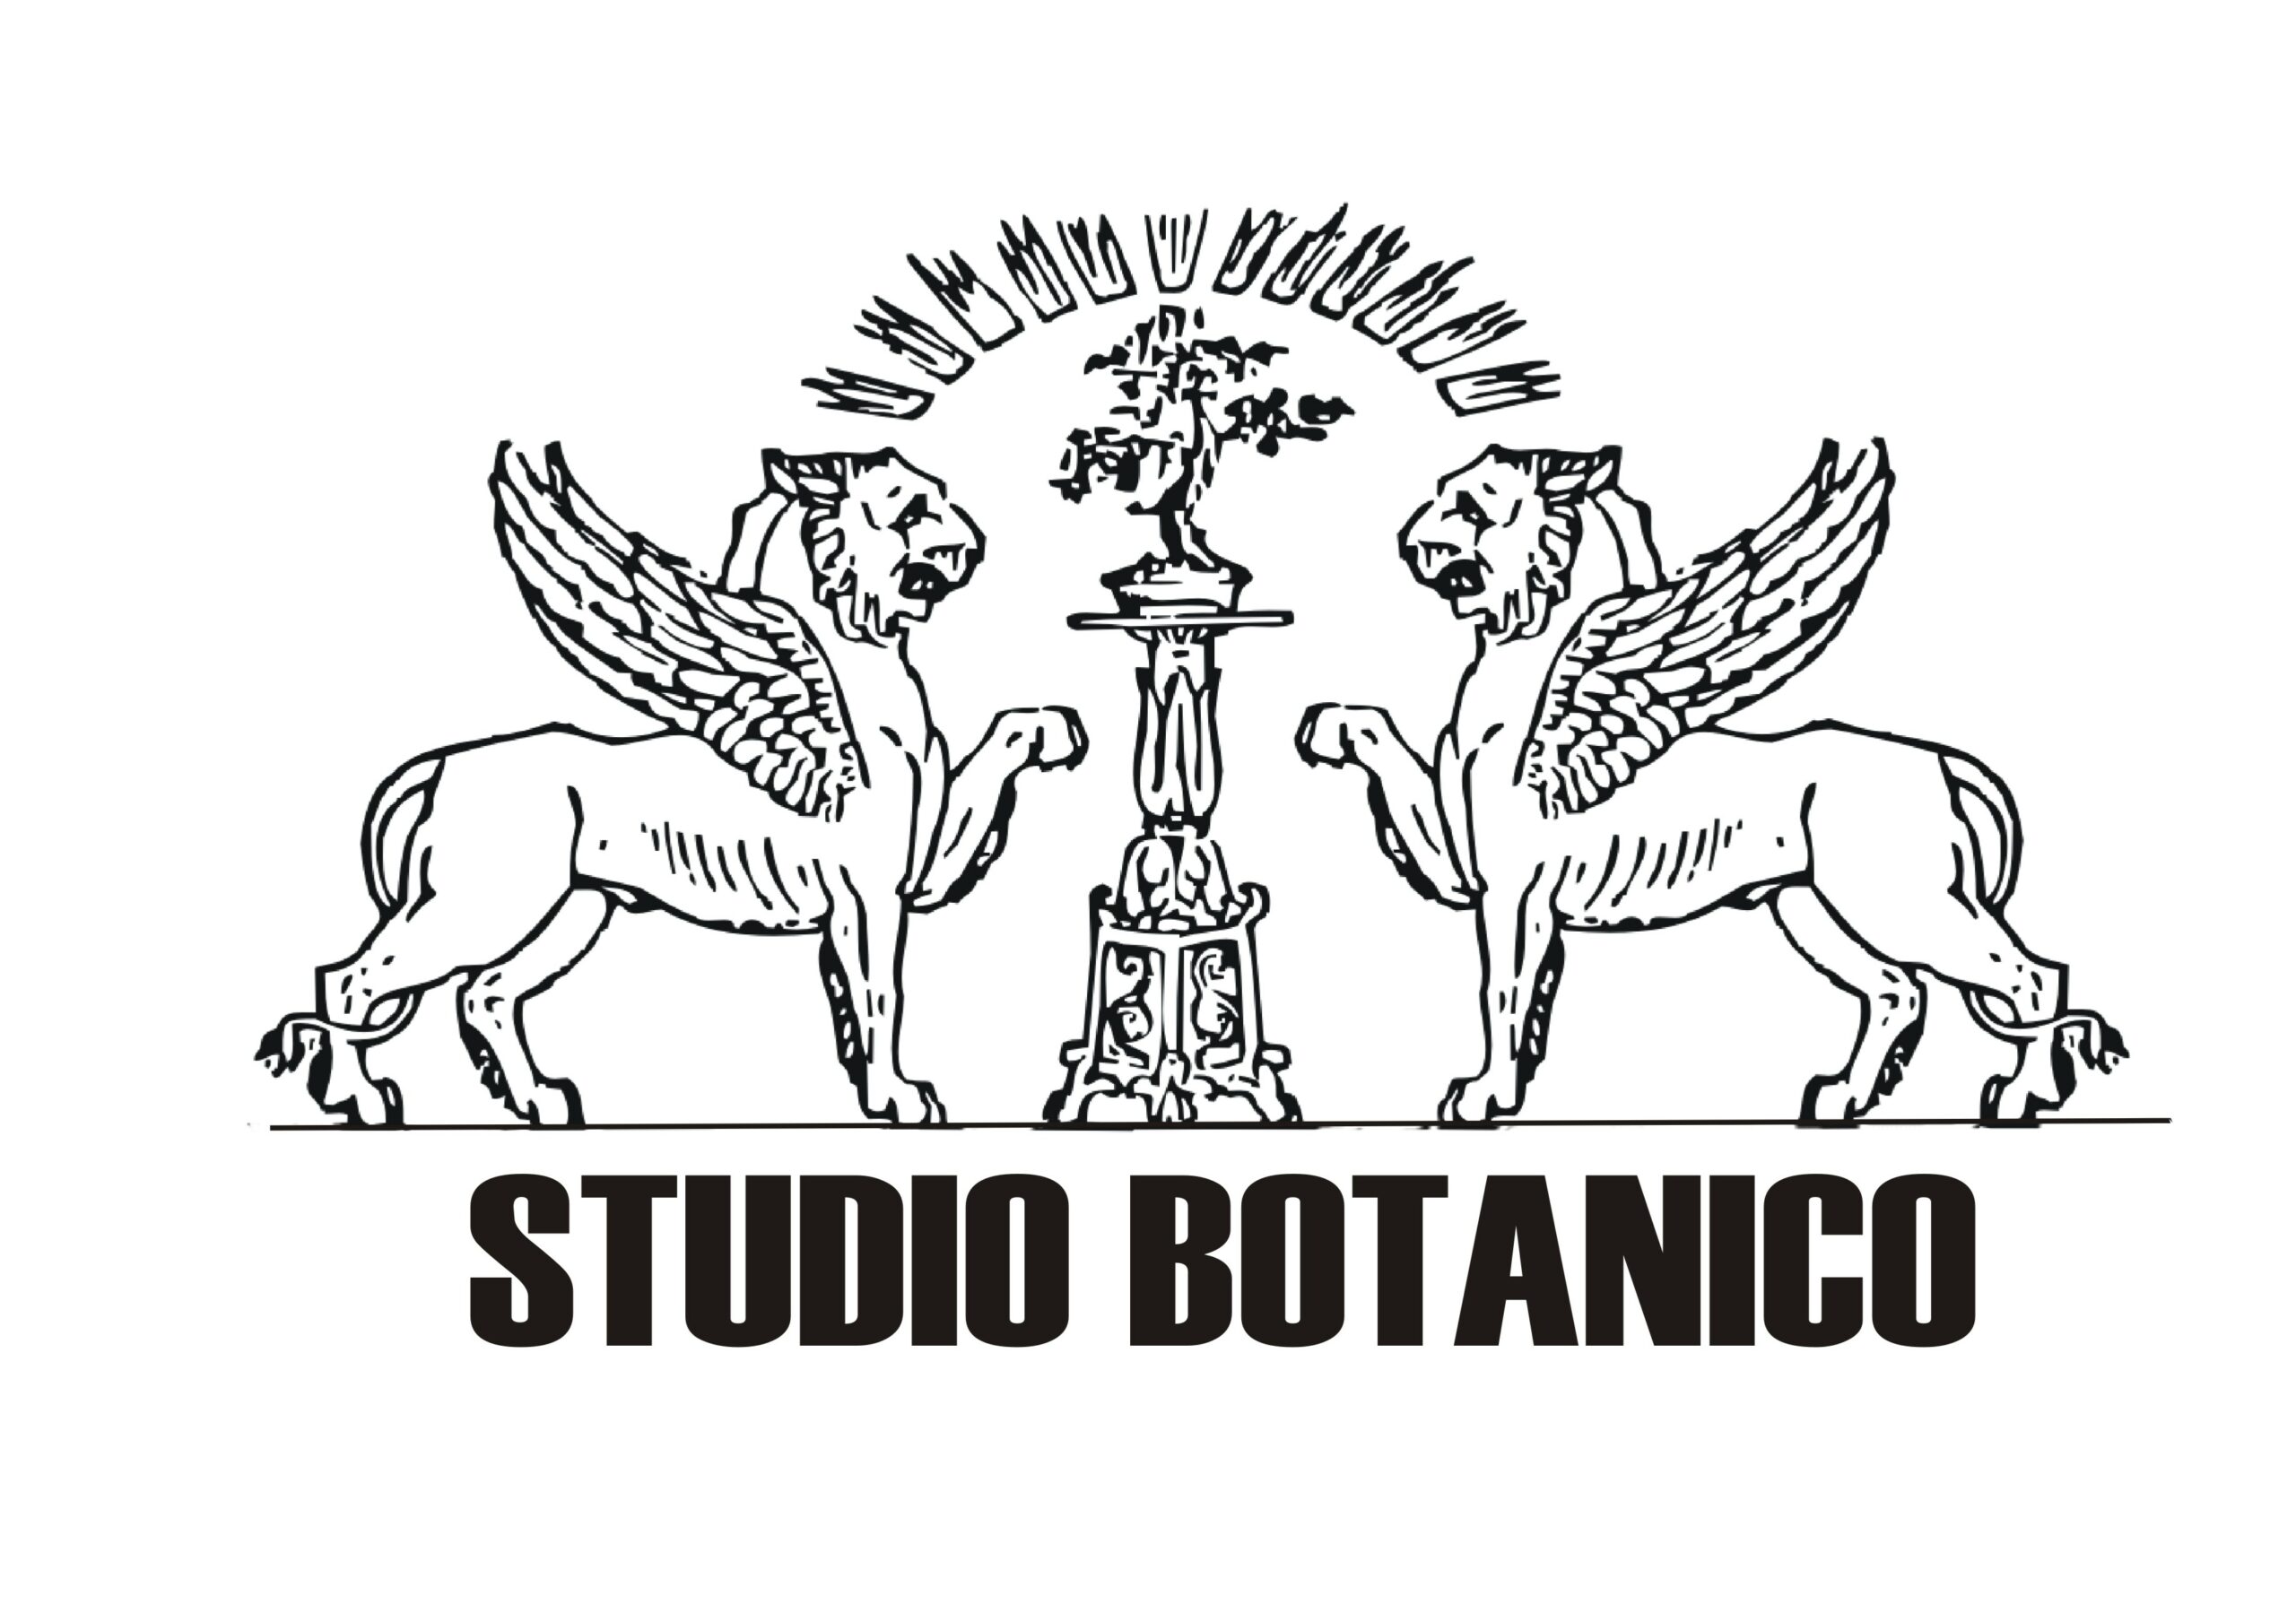 Studio Botanico